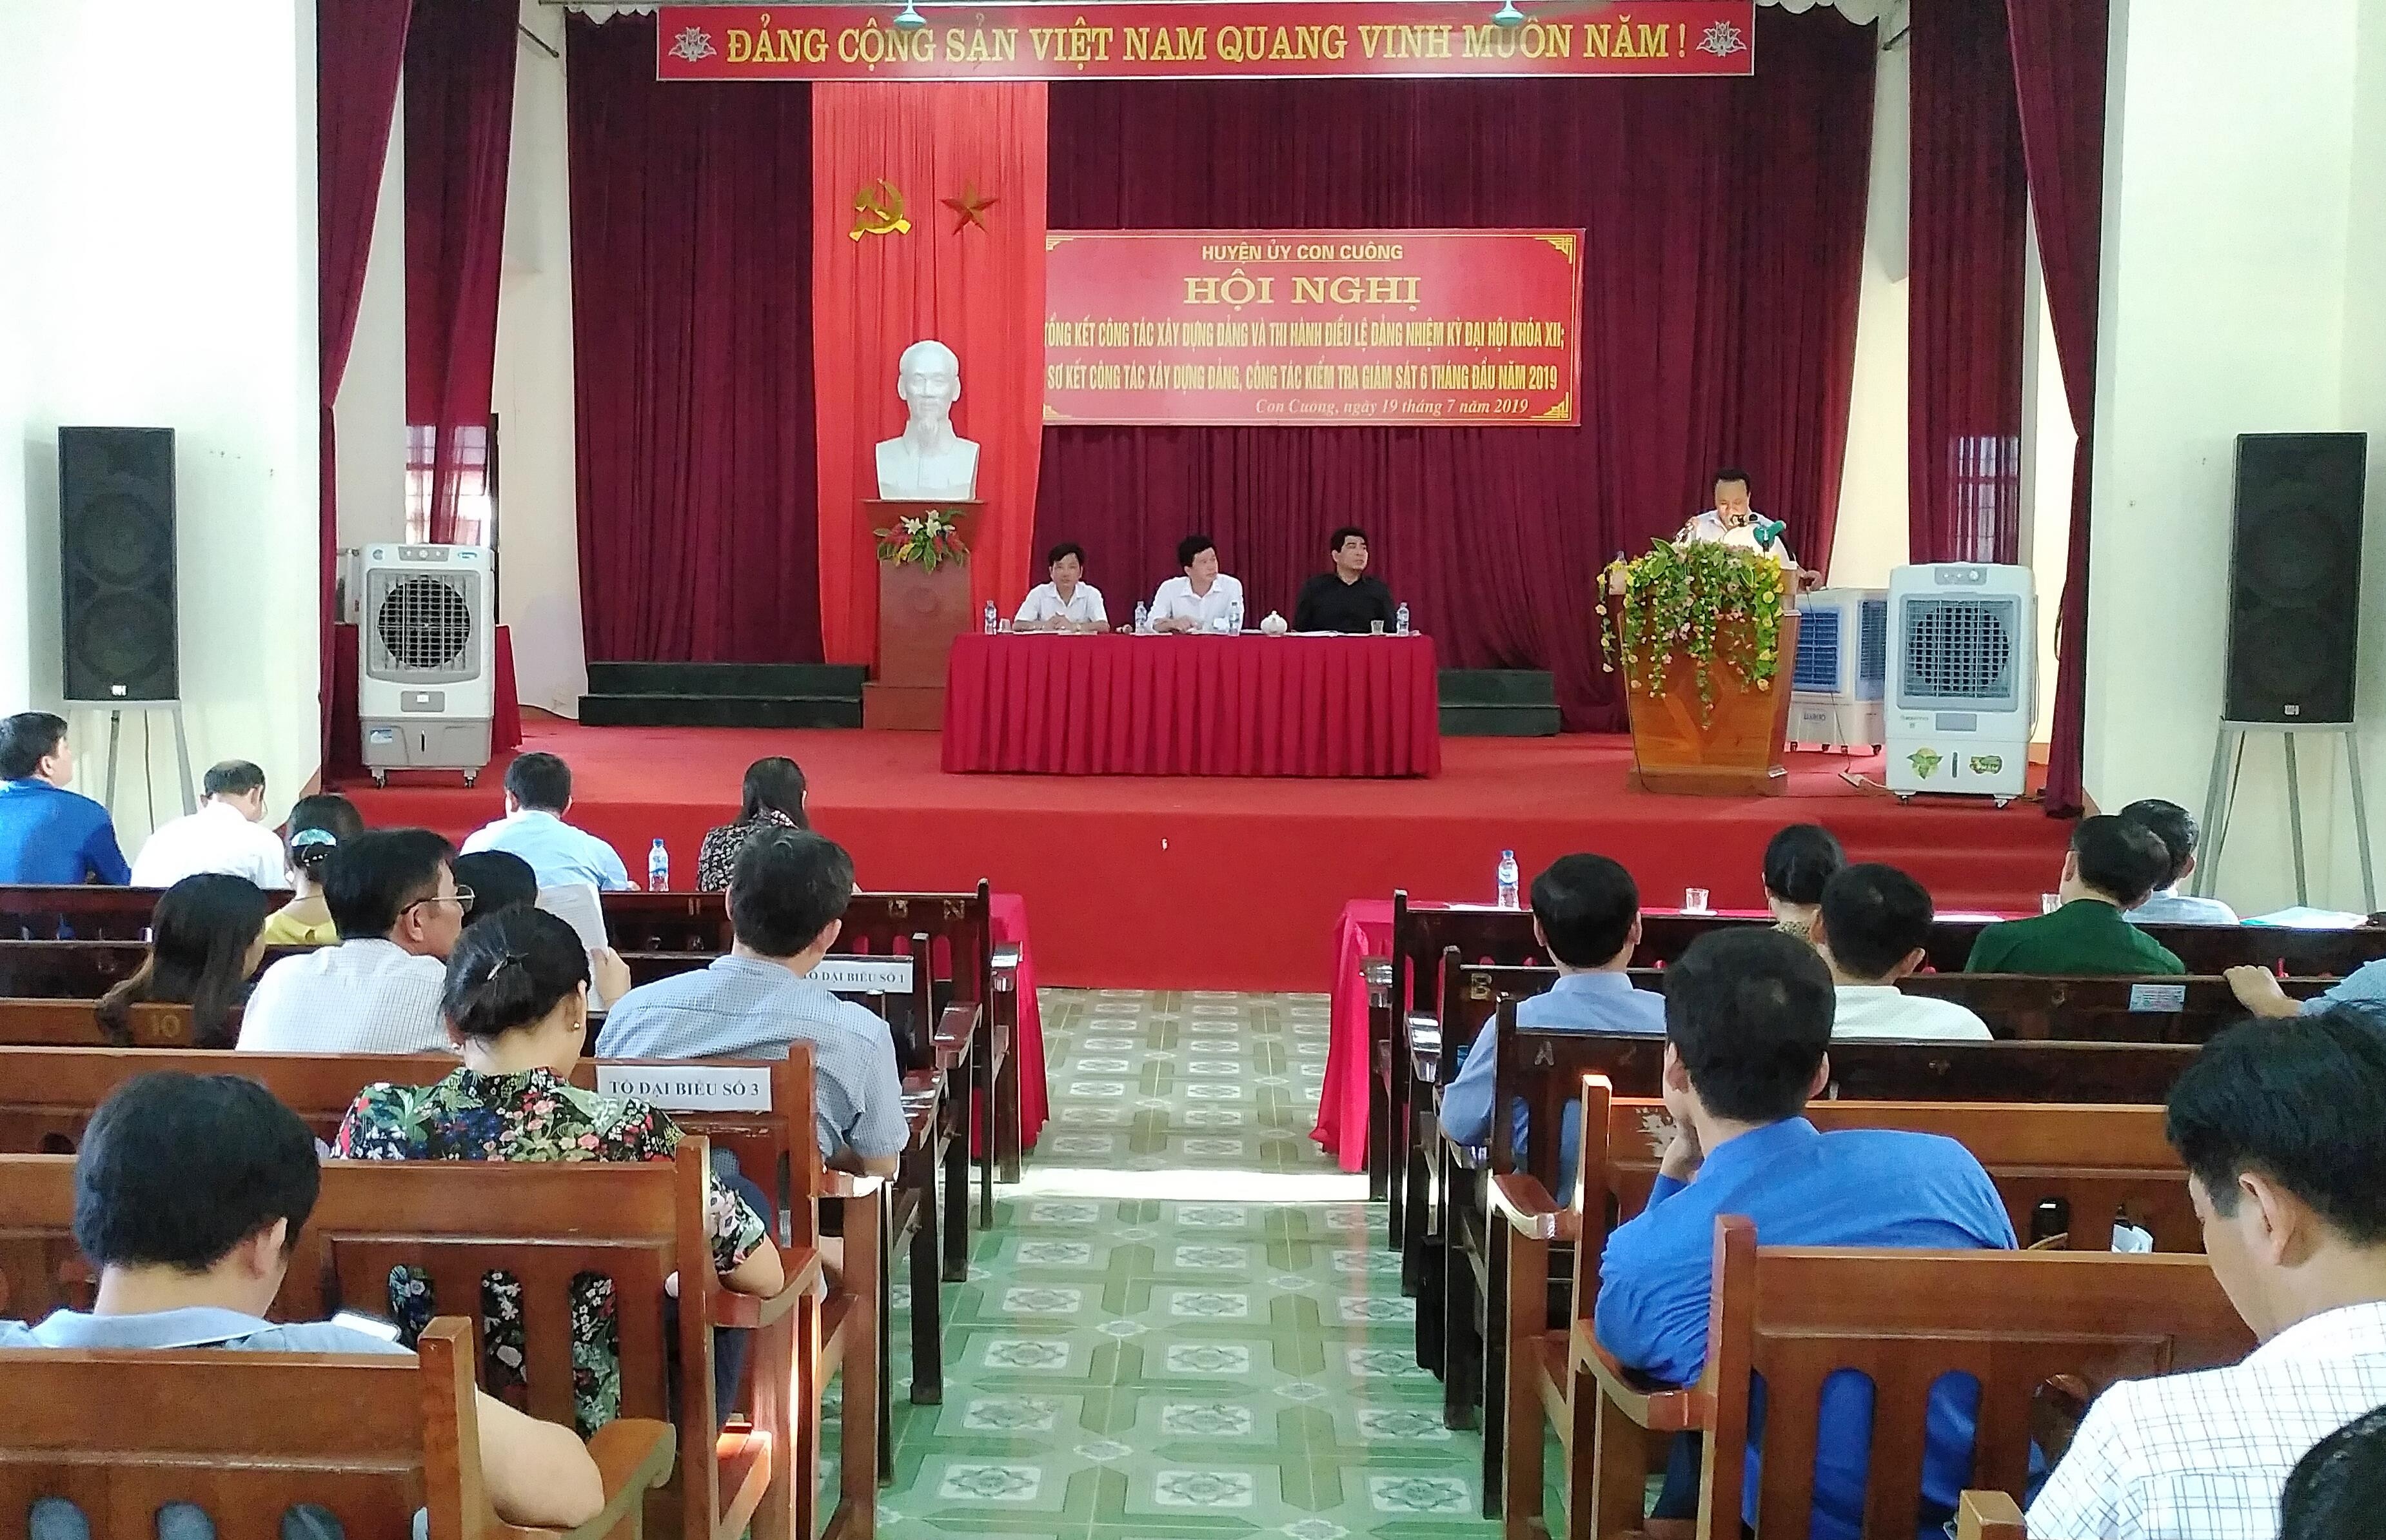 Chiều ngày 19/7/2019, Đảng bộ huyện Con Cuông tổ chức Hội nghị Tổng kết công tác xây dựng Đảng và thi hành điều lệ Đảng nhiệm kỳ đại hội khóa XII; sơ kết công tác xây dựng Đảng 6 tháng đầu năm, định hướng nhiệm vụ 6 tháng cuối năm 2019.